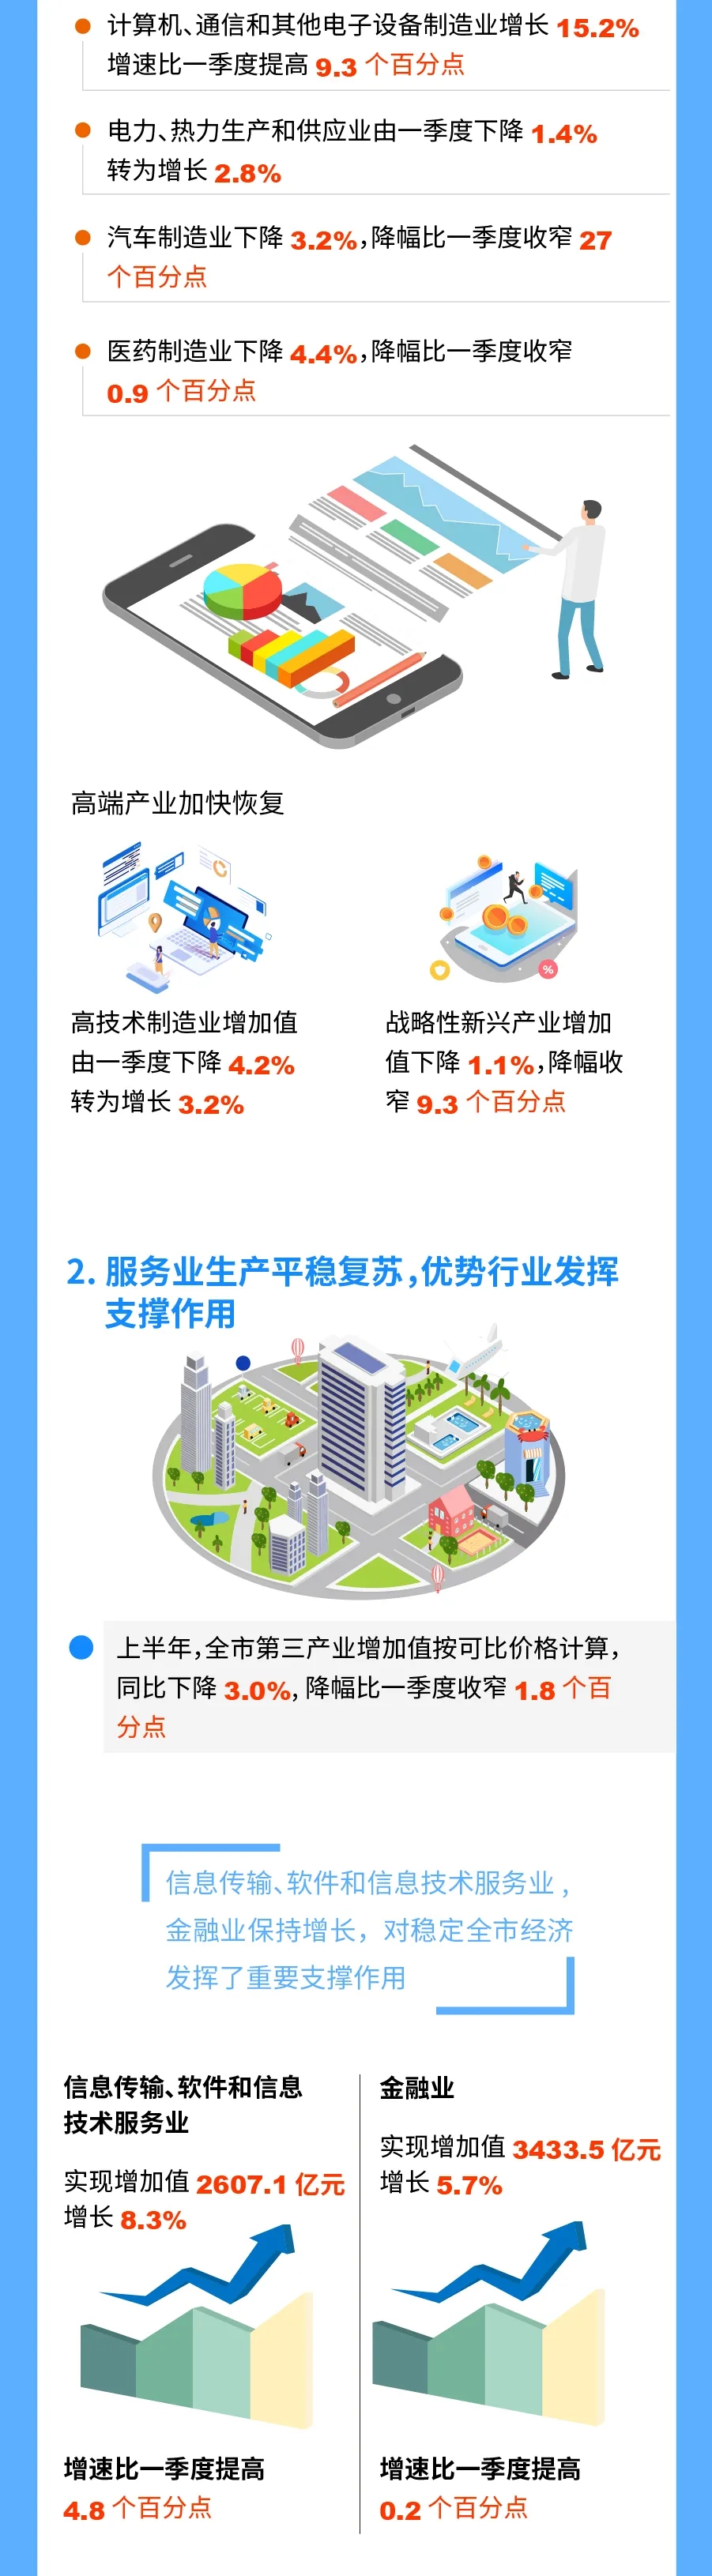 圖解2020年上半年北京市經濟運作情況